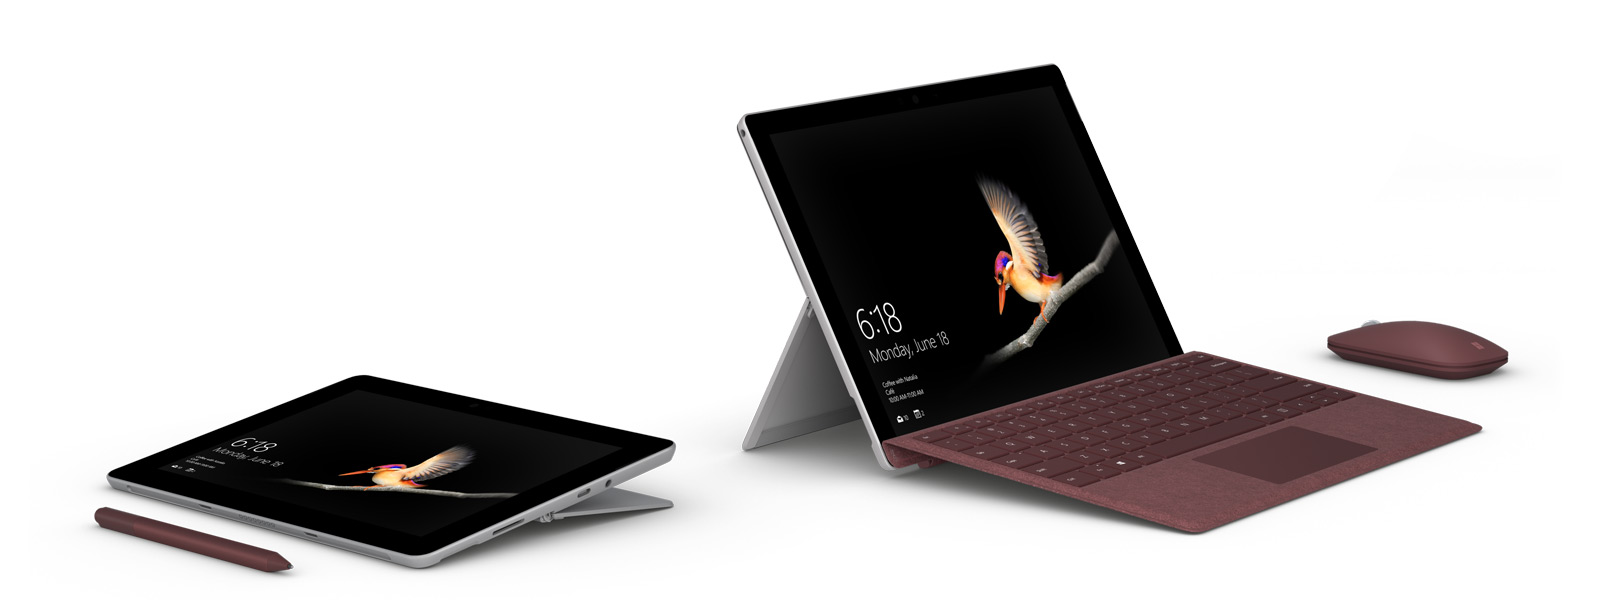 在左側，相片中的 Surface Go 支架放低至 165 度，並且 Surface 手寫筆表現出是個適用於繪圖和筆跡功能的出色裝置。在右側，相片中的裝置膝上型電腦模式並搭配使用配件，其中包括 Surface Go Signature Type Cover 專業鍵盤保護蓋和 Surface Mobile Mouse 滑鼠。